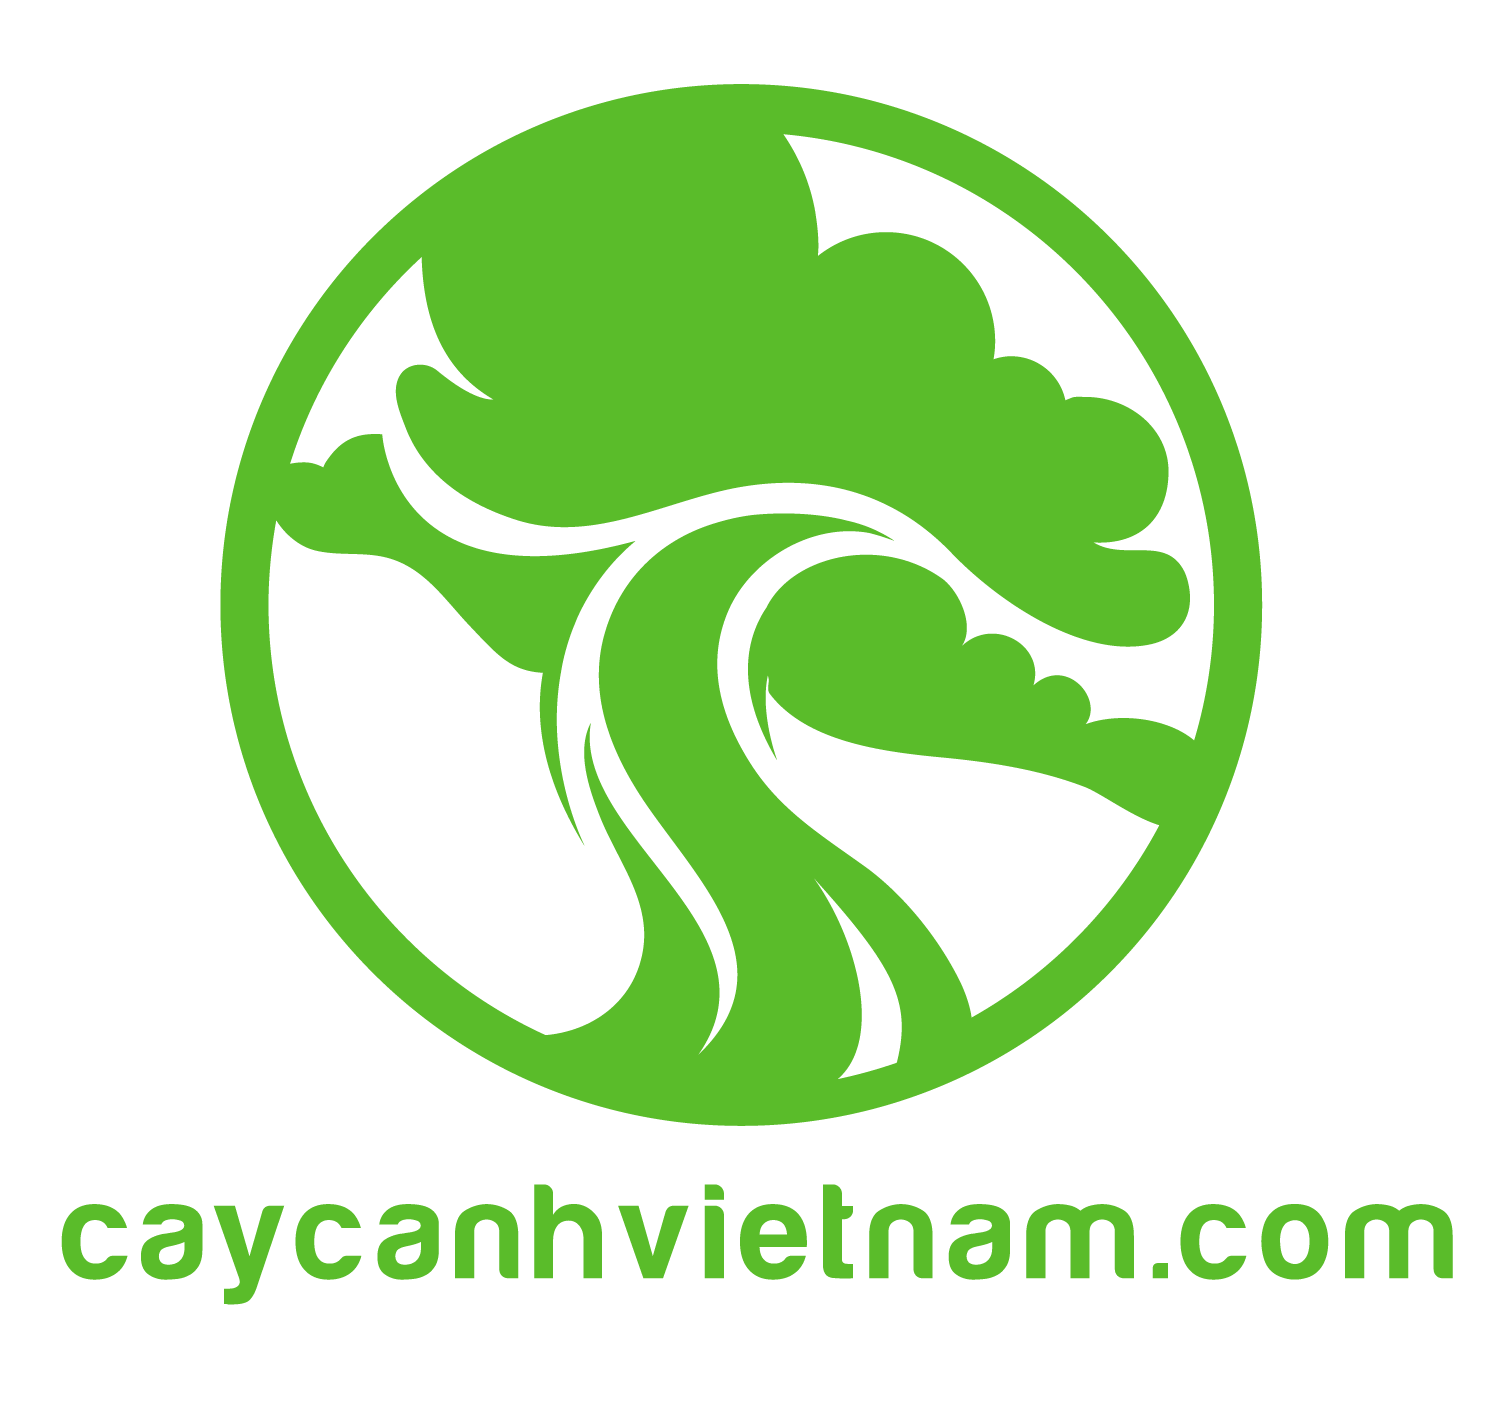 forum.caycanhvietnam.com